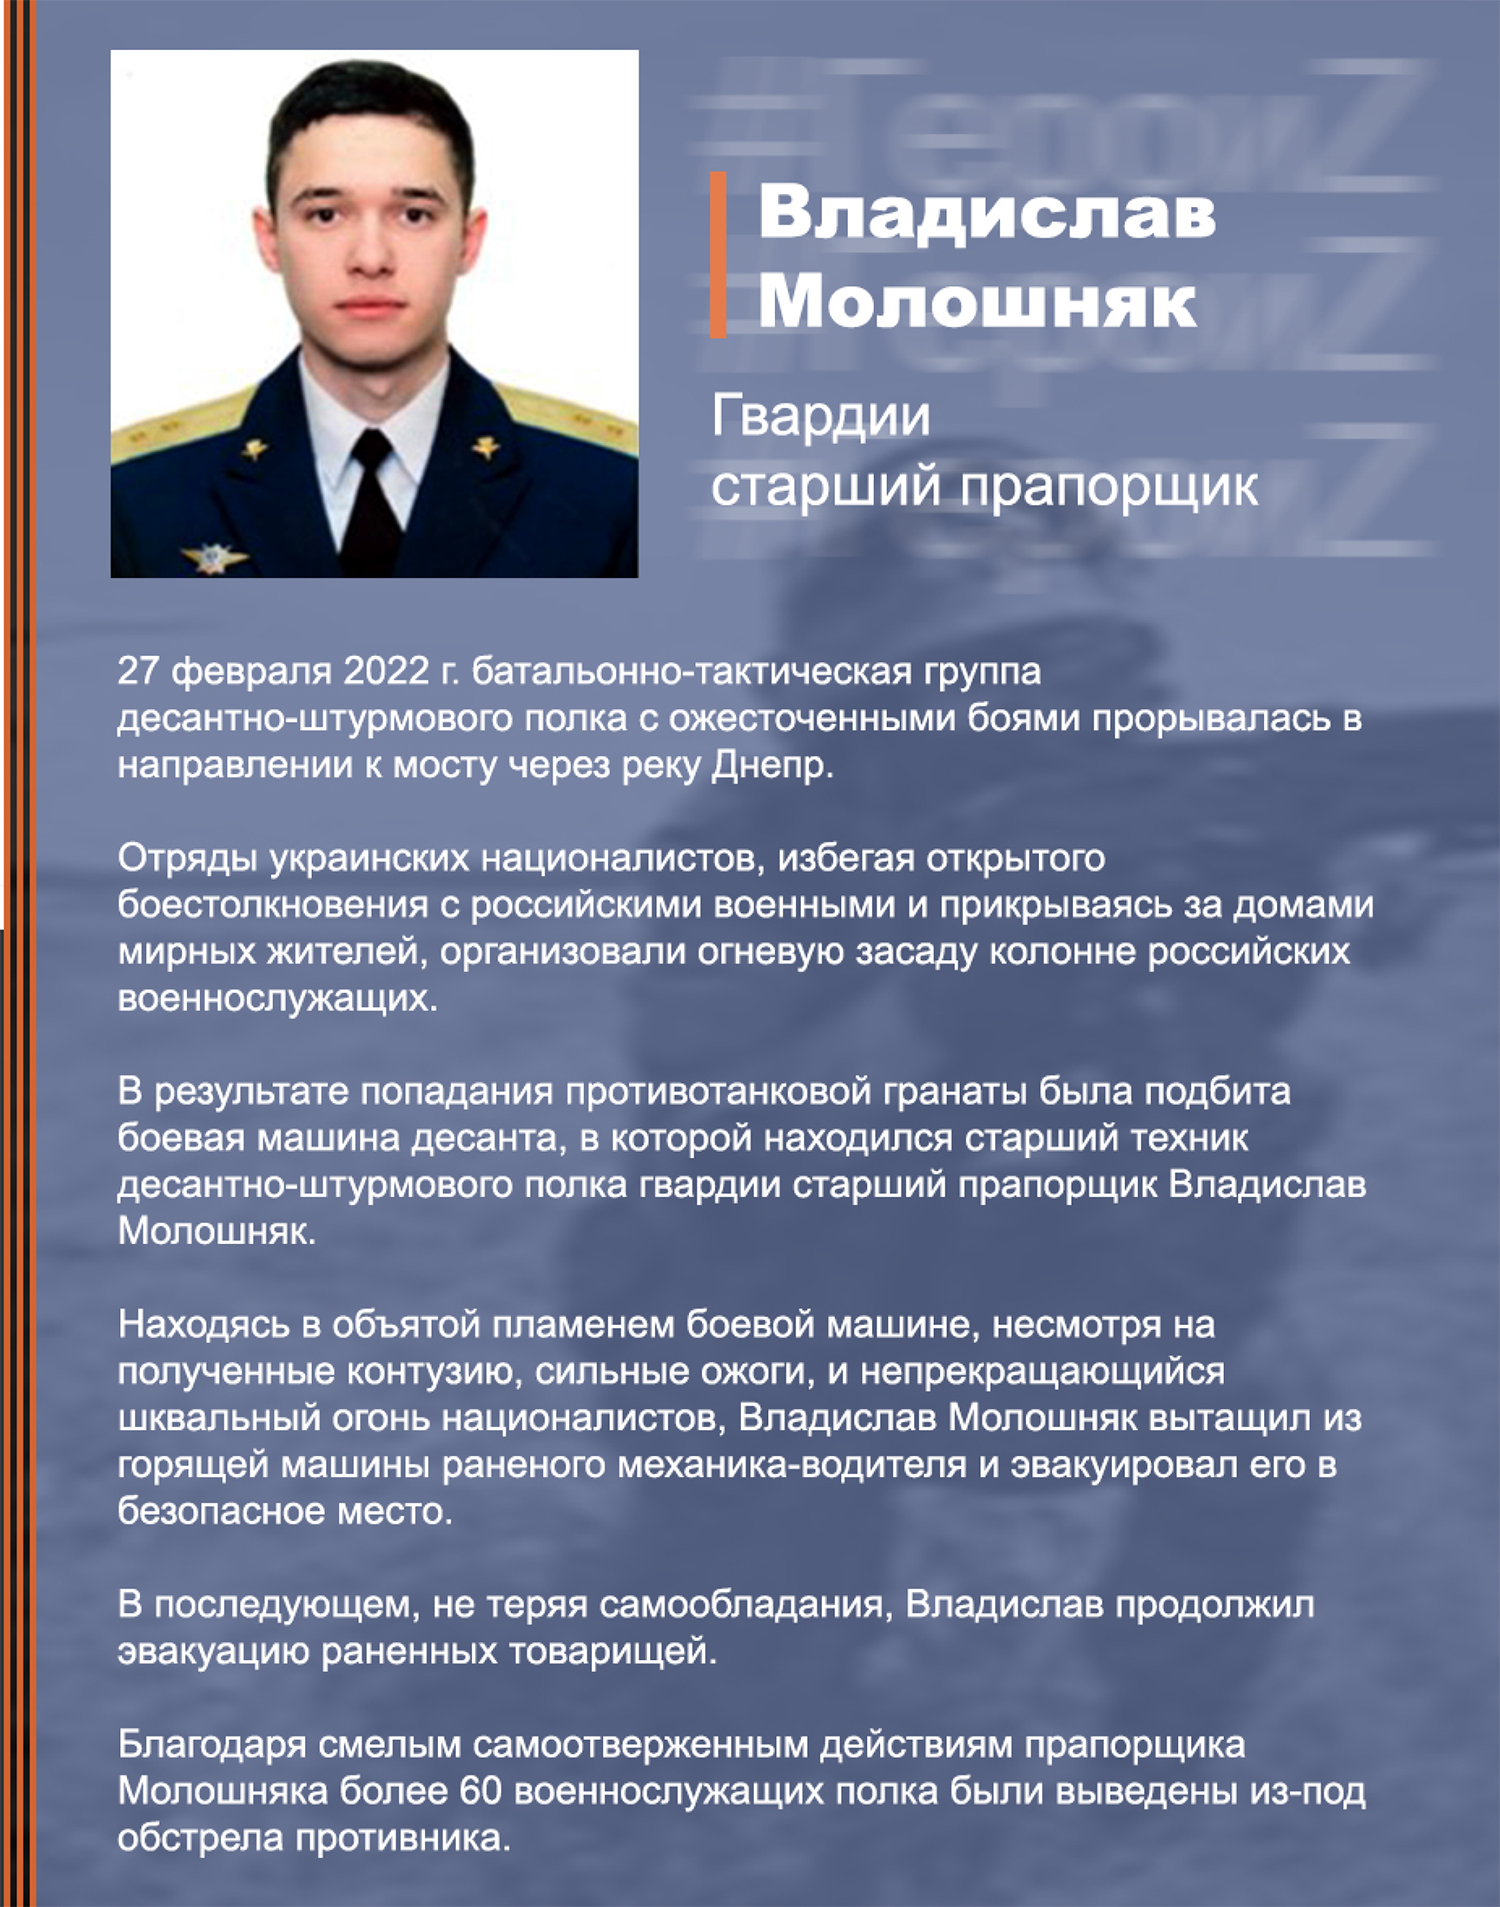 Vladislav_Moloshnyak_listovka.jpg